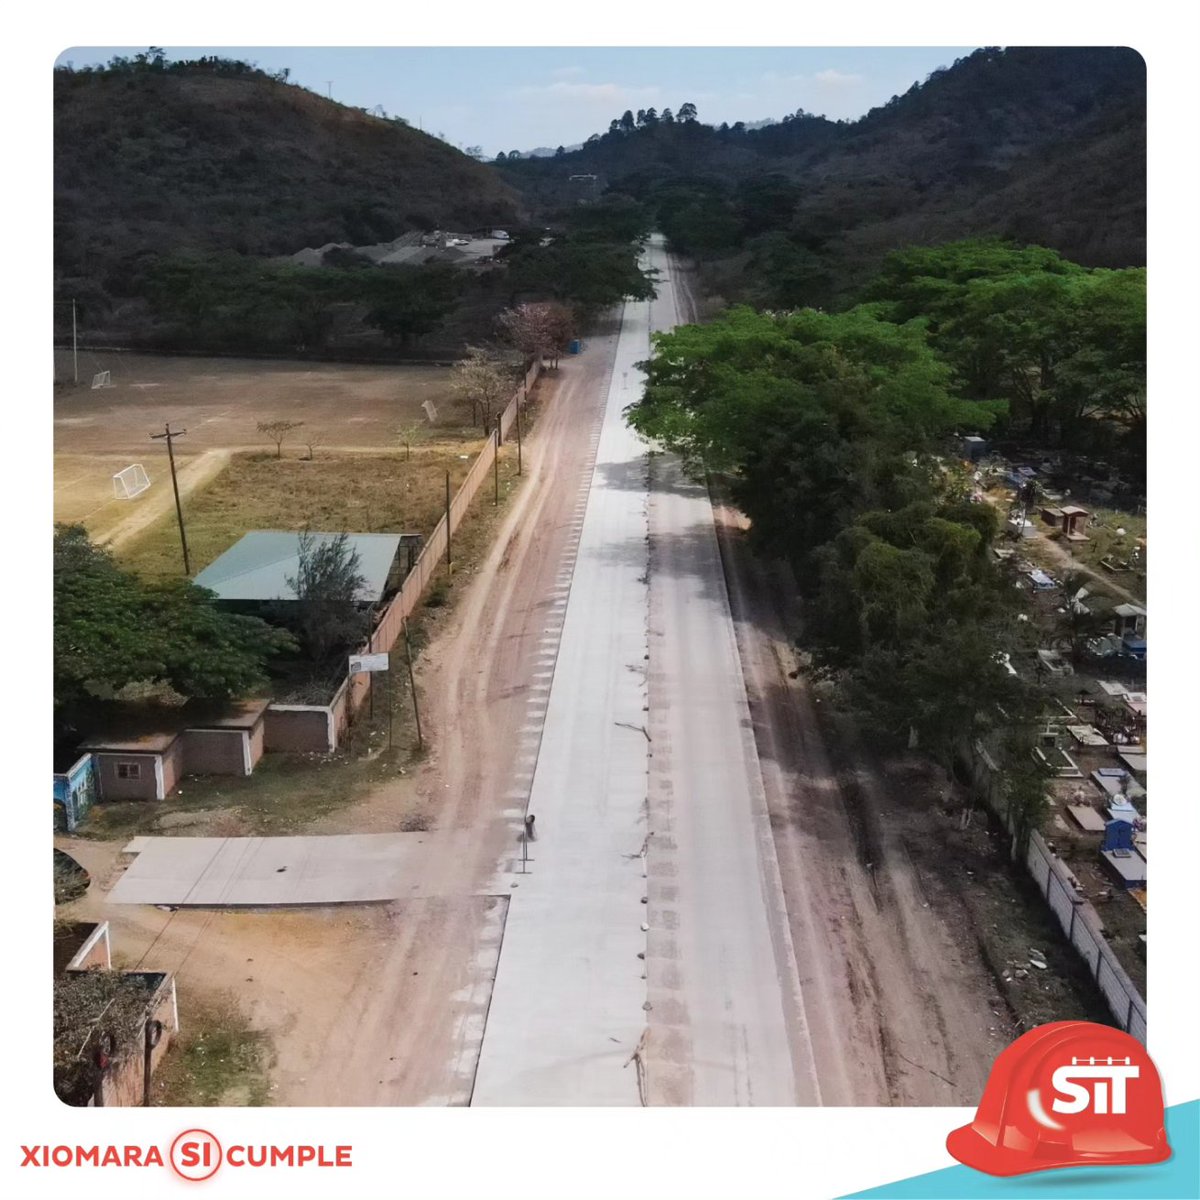 La construcción del pavimento de concreto hidráulico carretera 37, San Juan de Flores hasta Talanga, F.M. Es un exito no solo porqué se traduce en calles más seguras, sino también en una infraestructura resiliente que perdurará por años. Este proyecto beneficia a 50,350 personas.